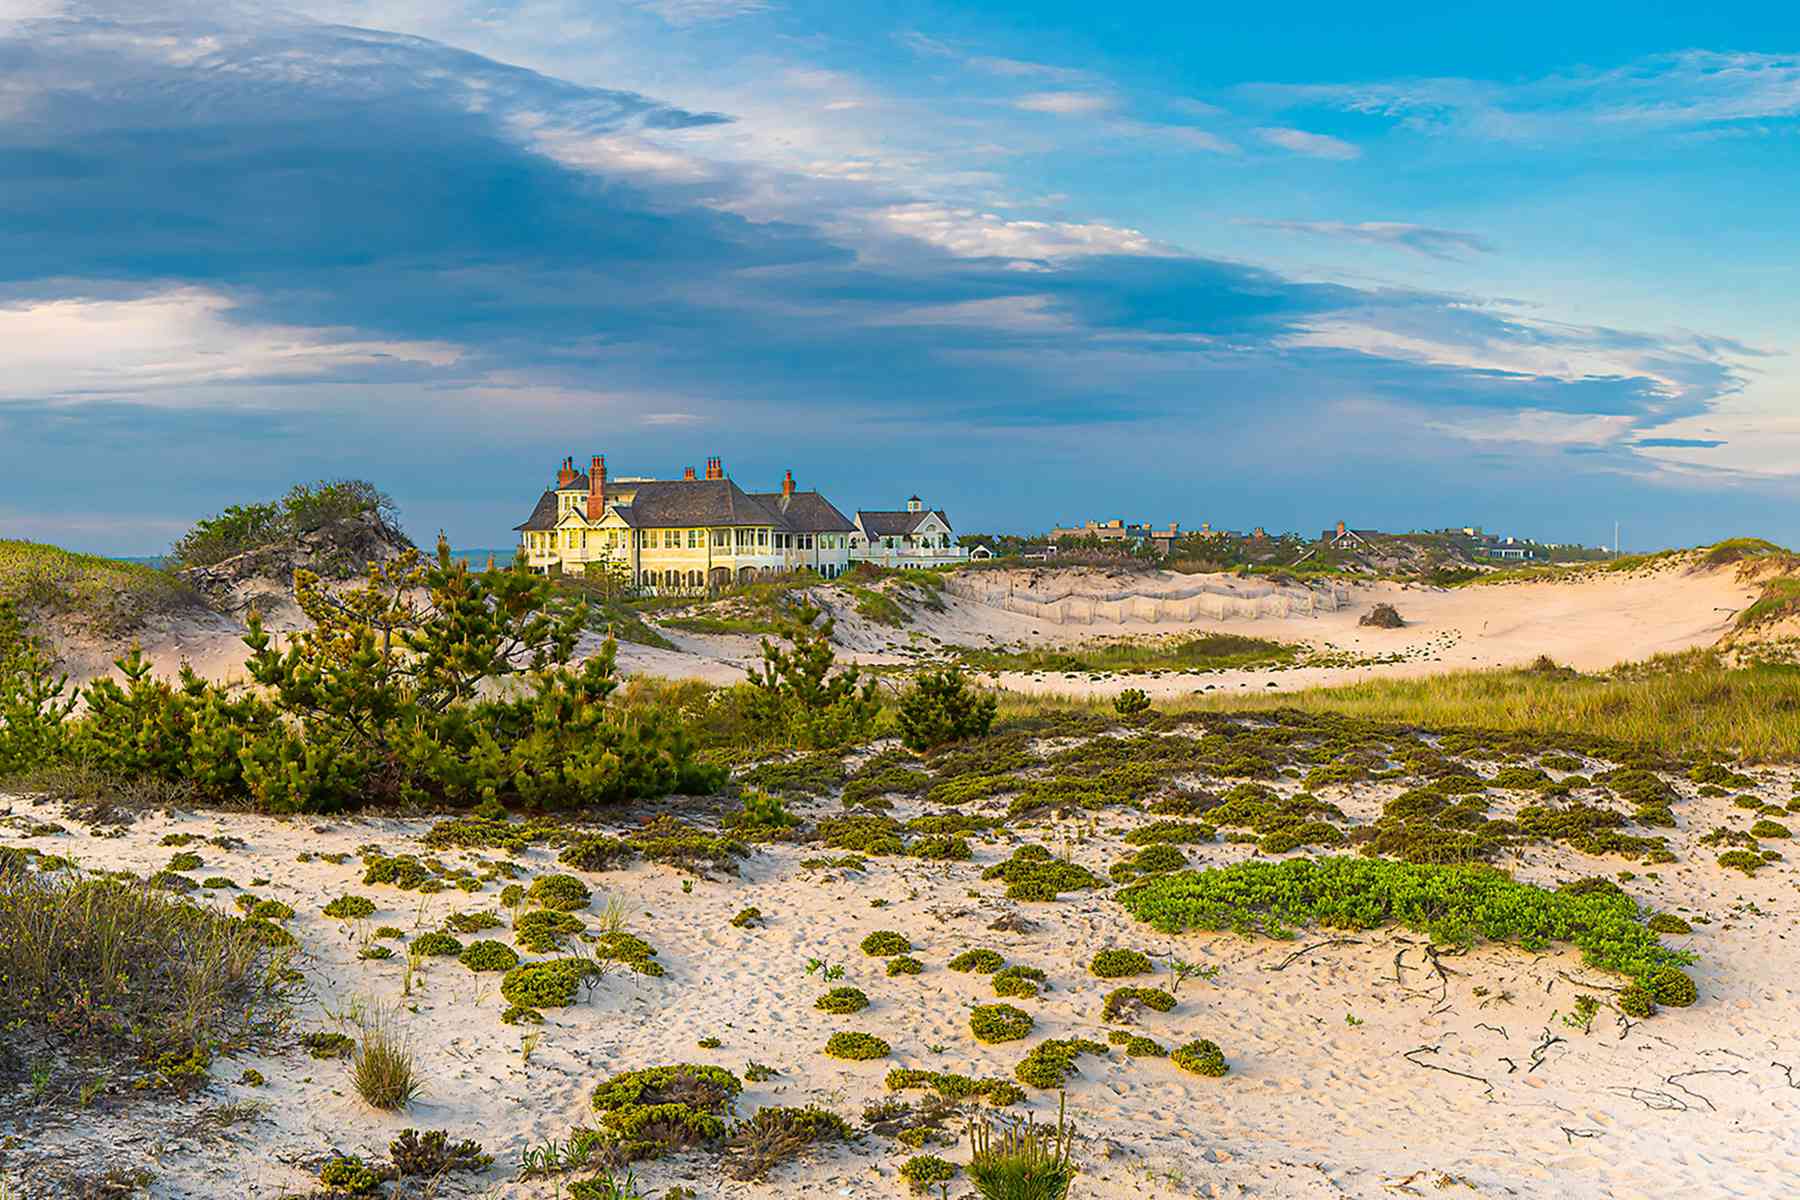 Vues classiques des Hamptons sur le bord de mer, les dunes et les manoirs face à l